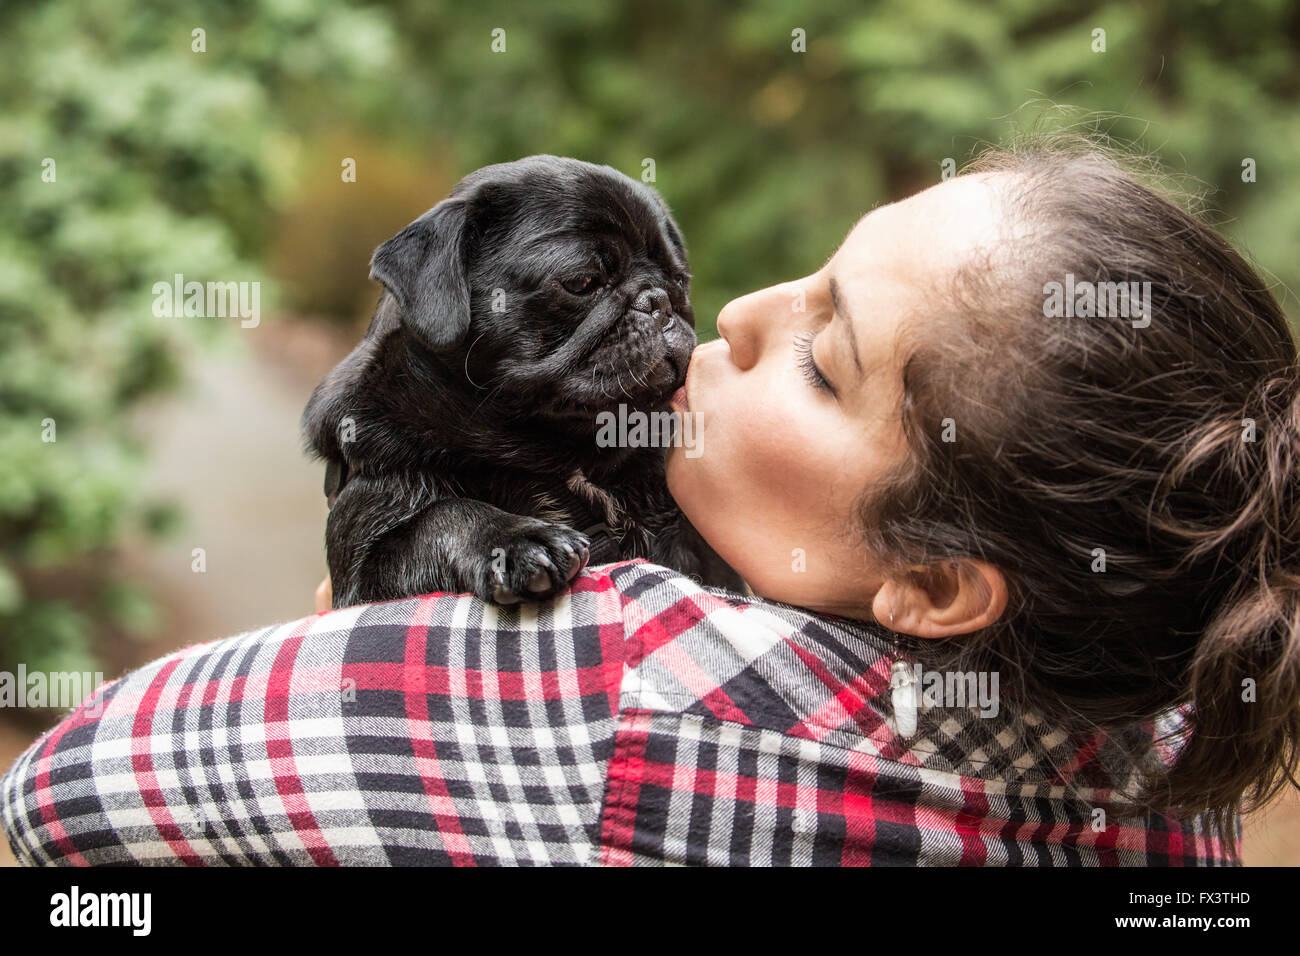 Kato, un chiot Carlin noir donnant son propriétaire un doggy kiss, dans Issaquah, Washington, USA Banque D'Images